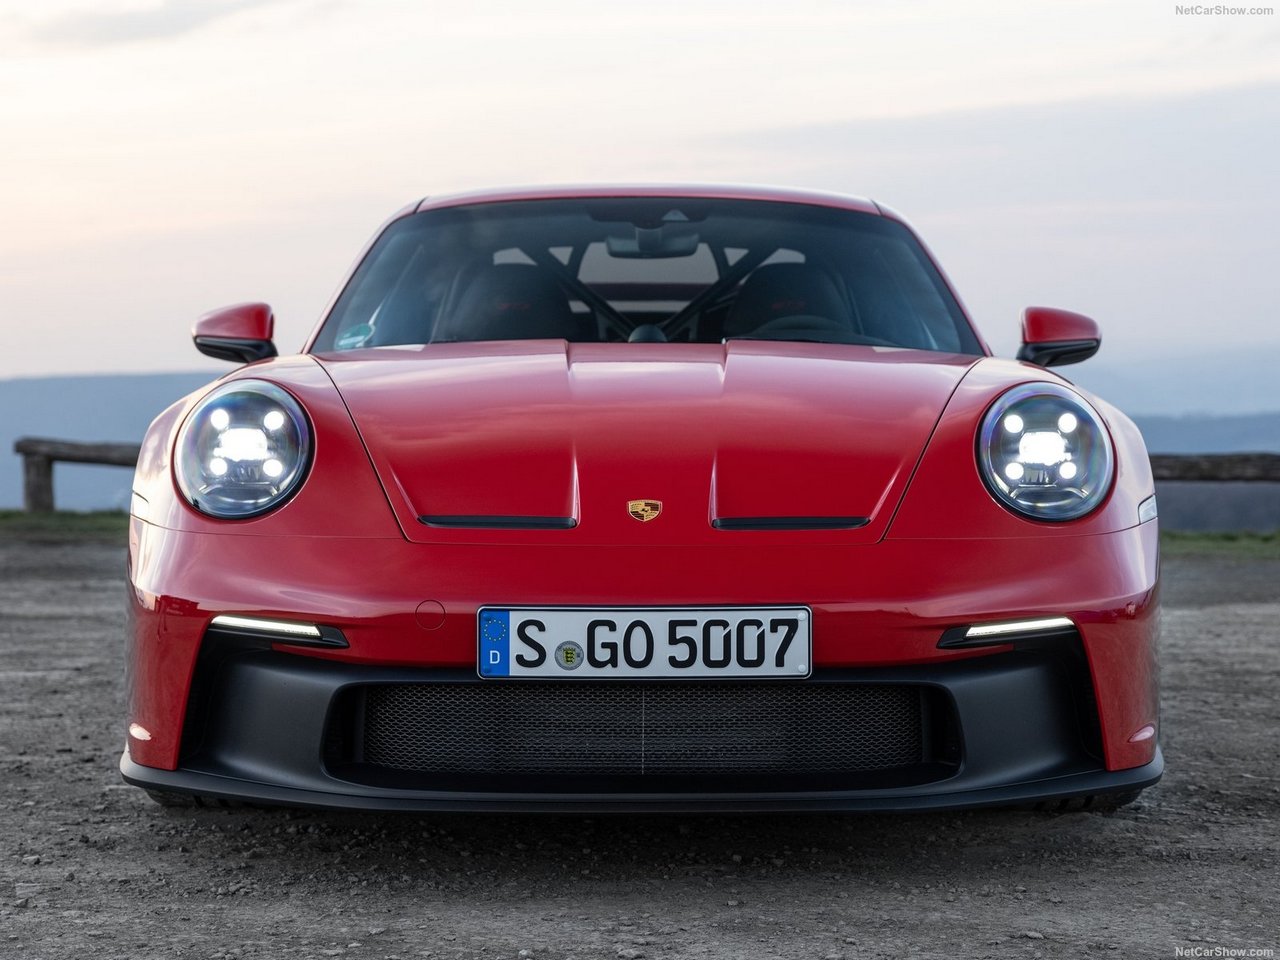 The new Porsche 911 GT3